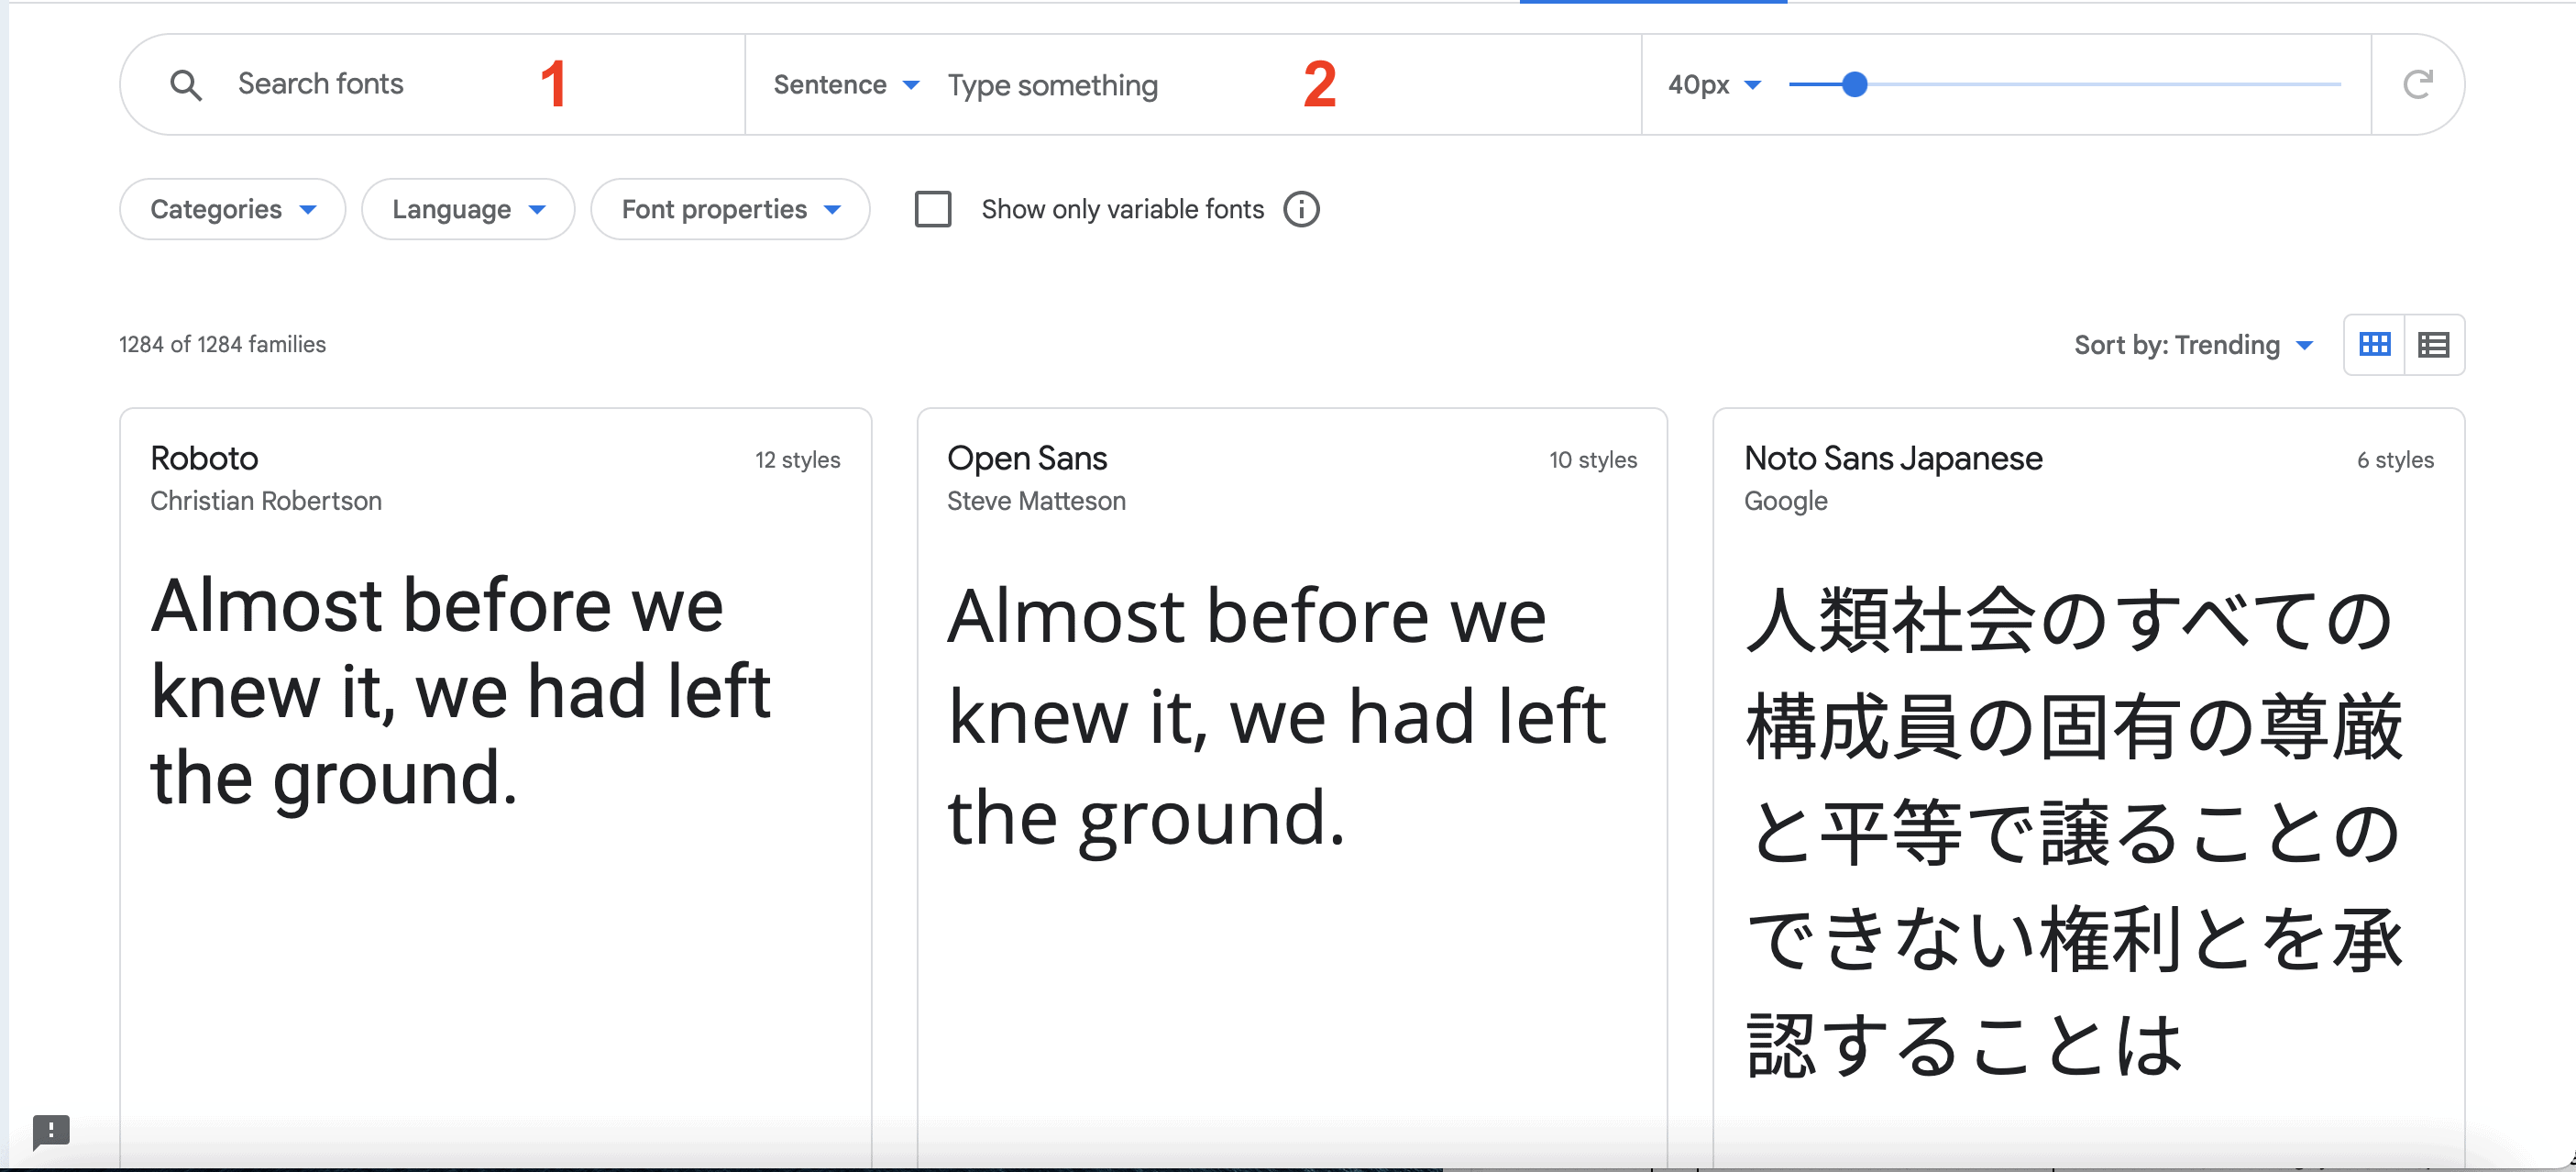 Hướng dẫn cách tải font chữ trên Google Font